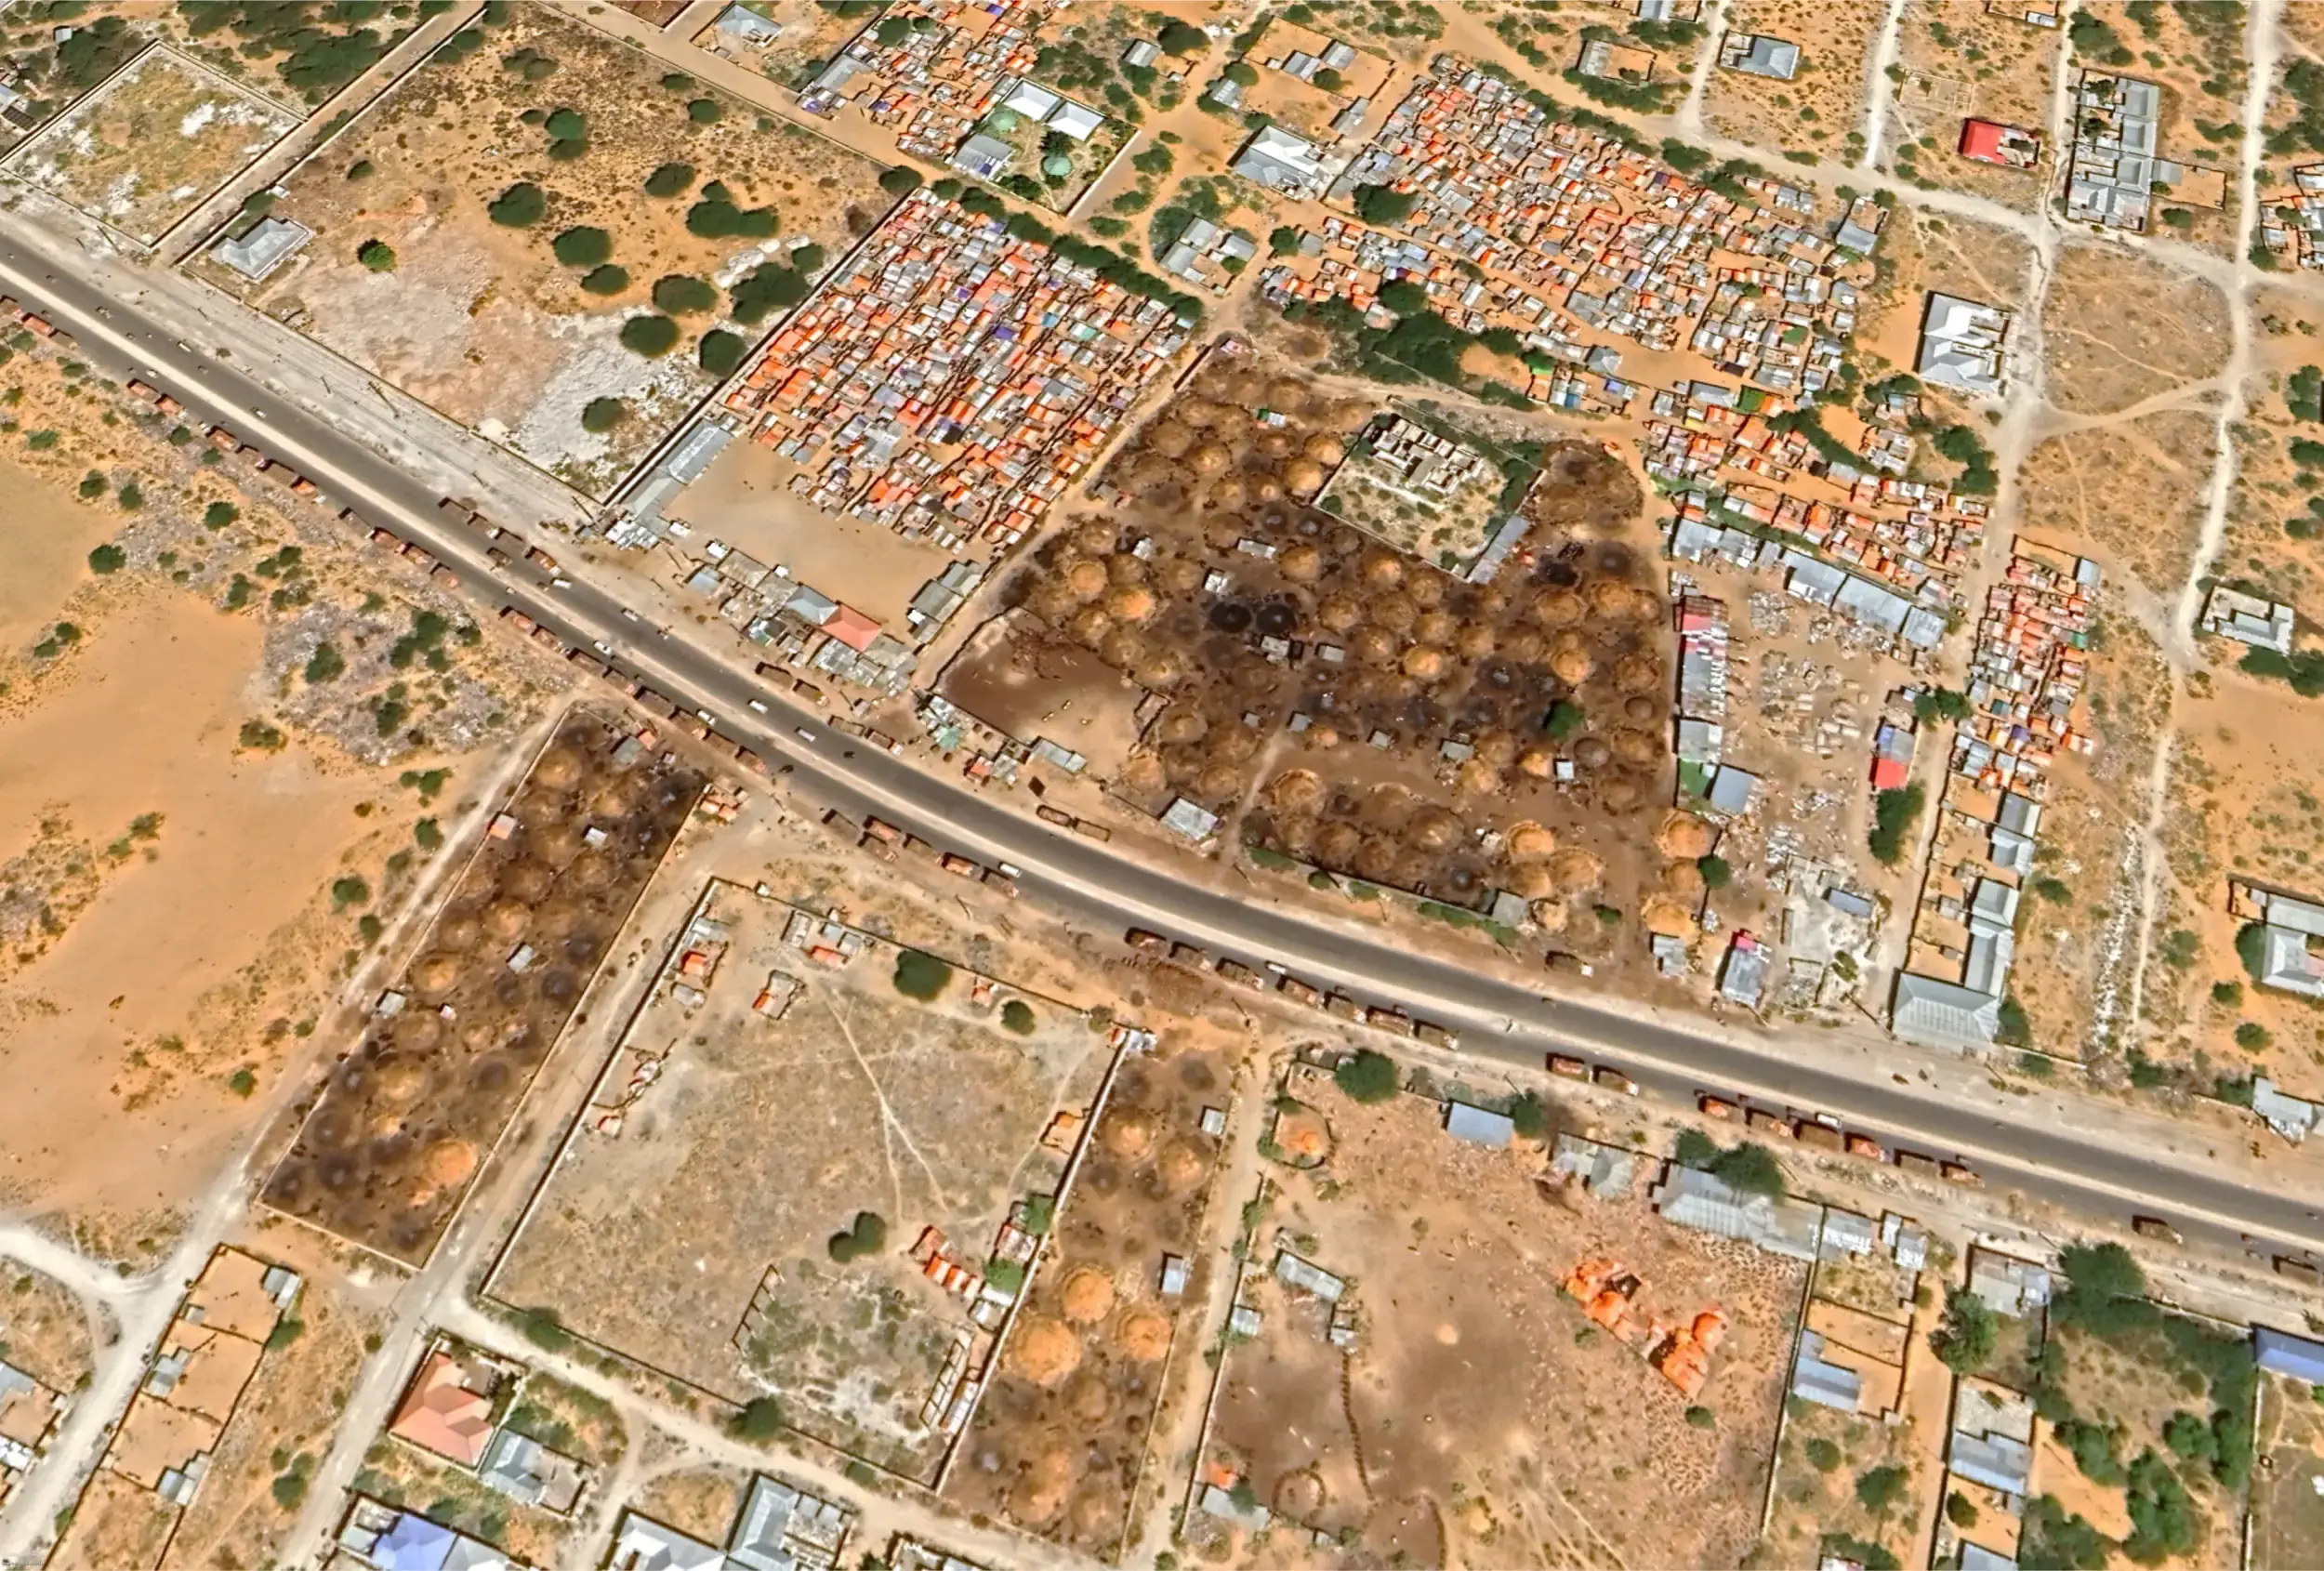 Satellitenbild zeigt Industriegebiet mit Holzkohlemeilern